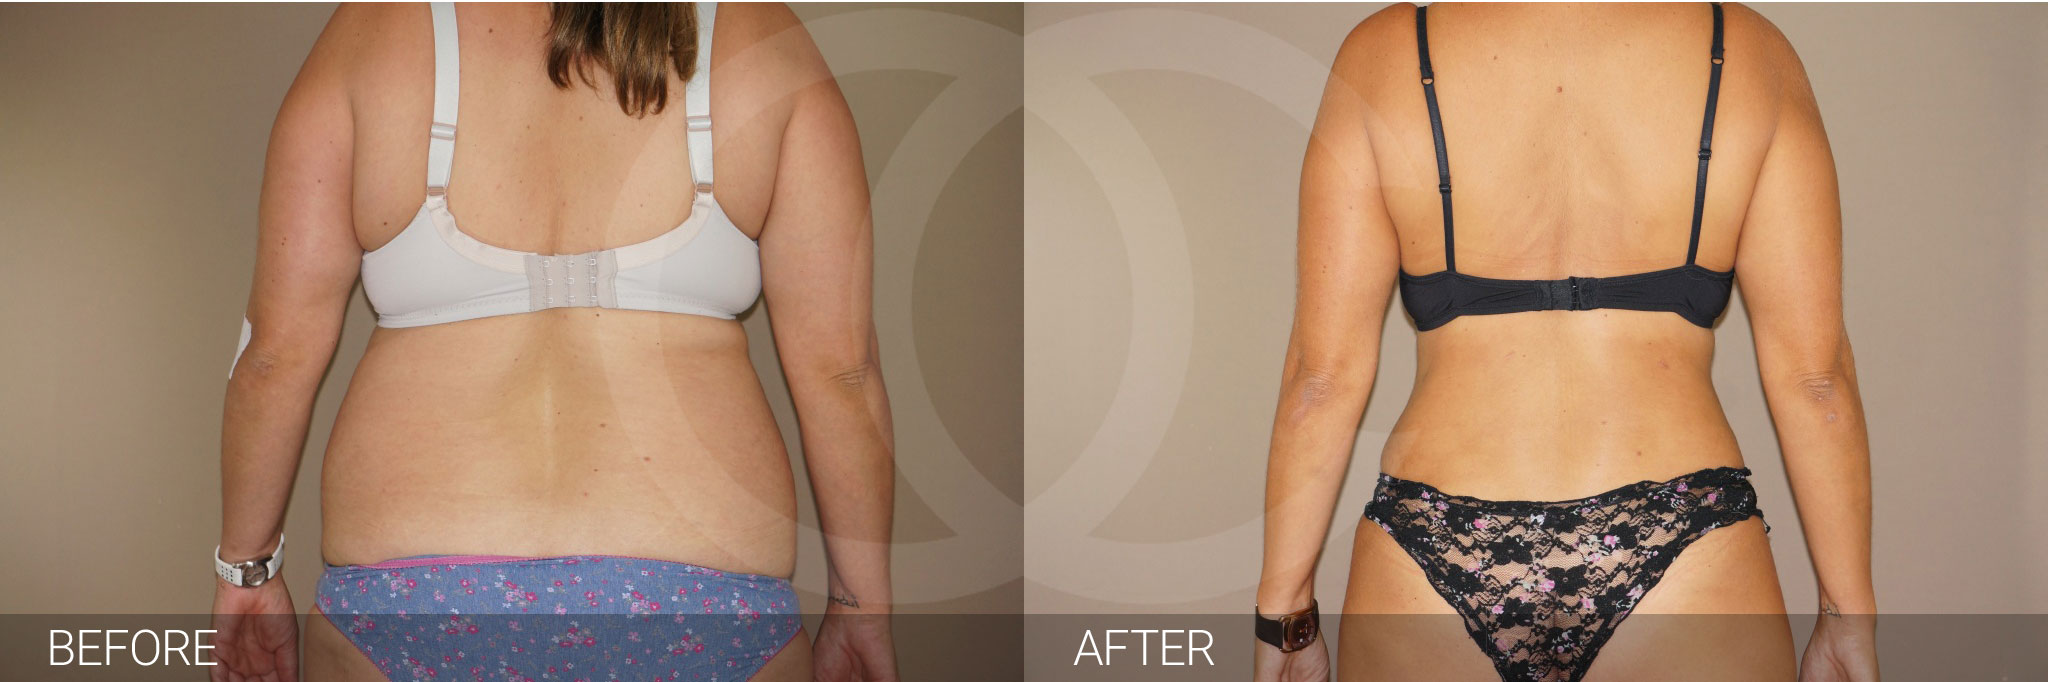 Antes y después Fotos de cirugía de abdomen fotos reales de pacientes 6.2 | Ocean Clinic Marbella Madrid